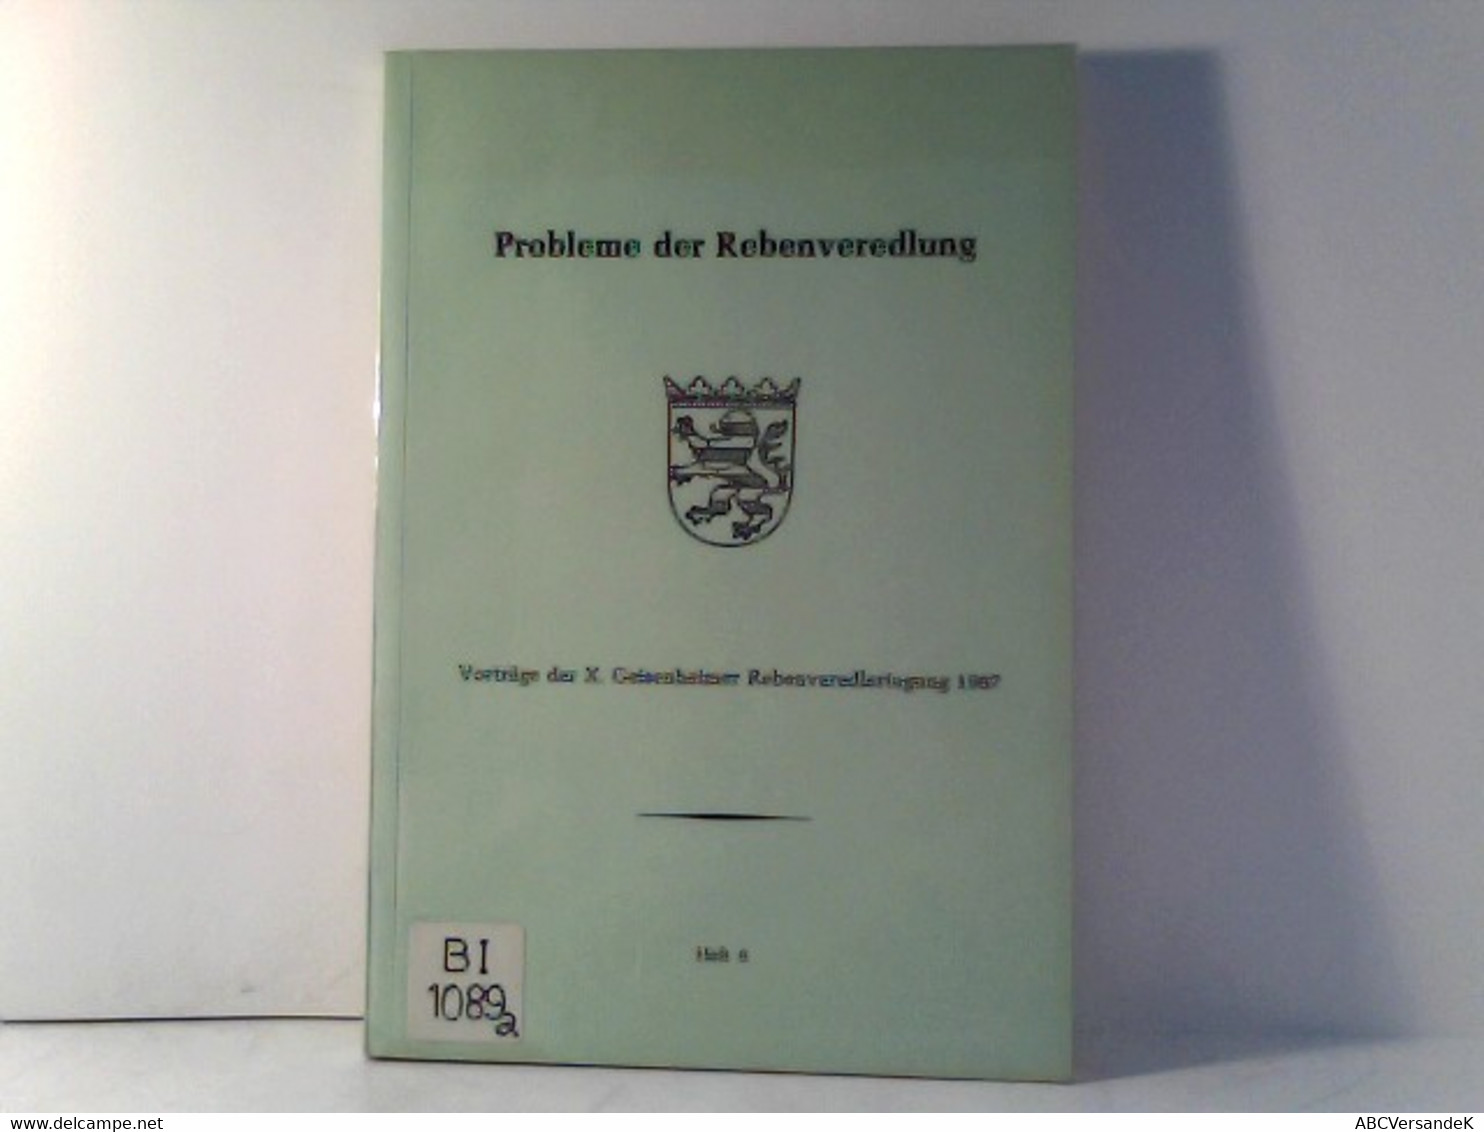 Probleme Der Rebenveredlung (Vortäge Der X. Geisenheimer Rebenveredlertagung 1967) Heft 6 - Natuur